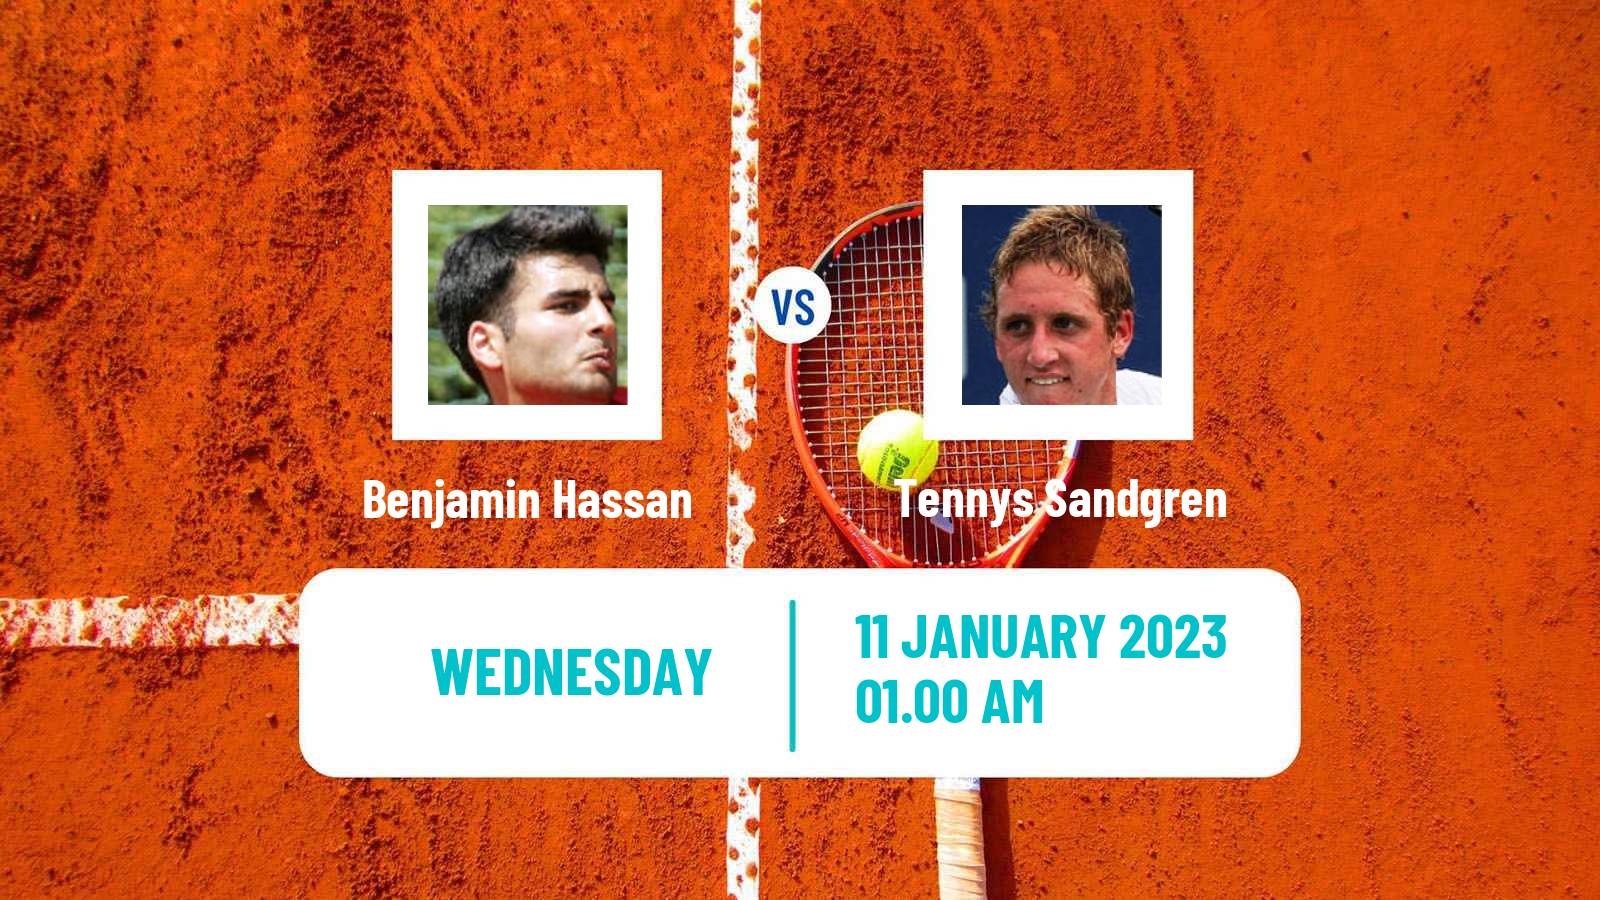 Tennis ATP Challenger Benjamin Hassan - Tennys Sandgren